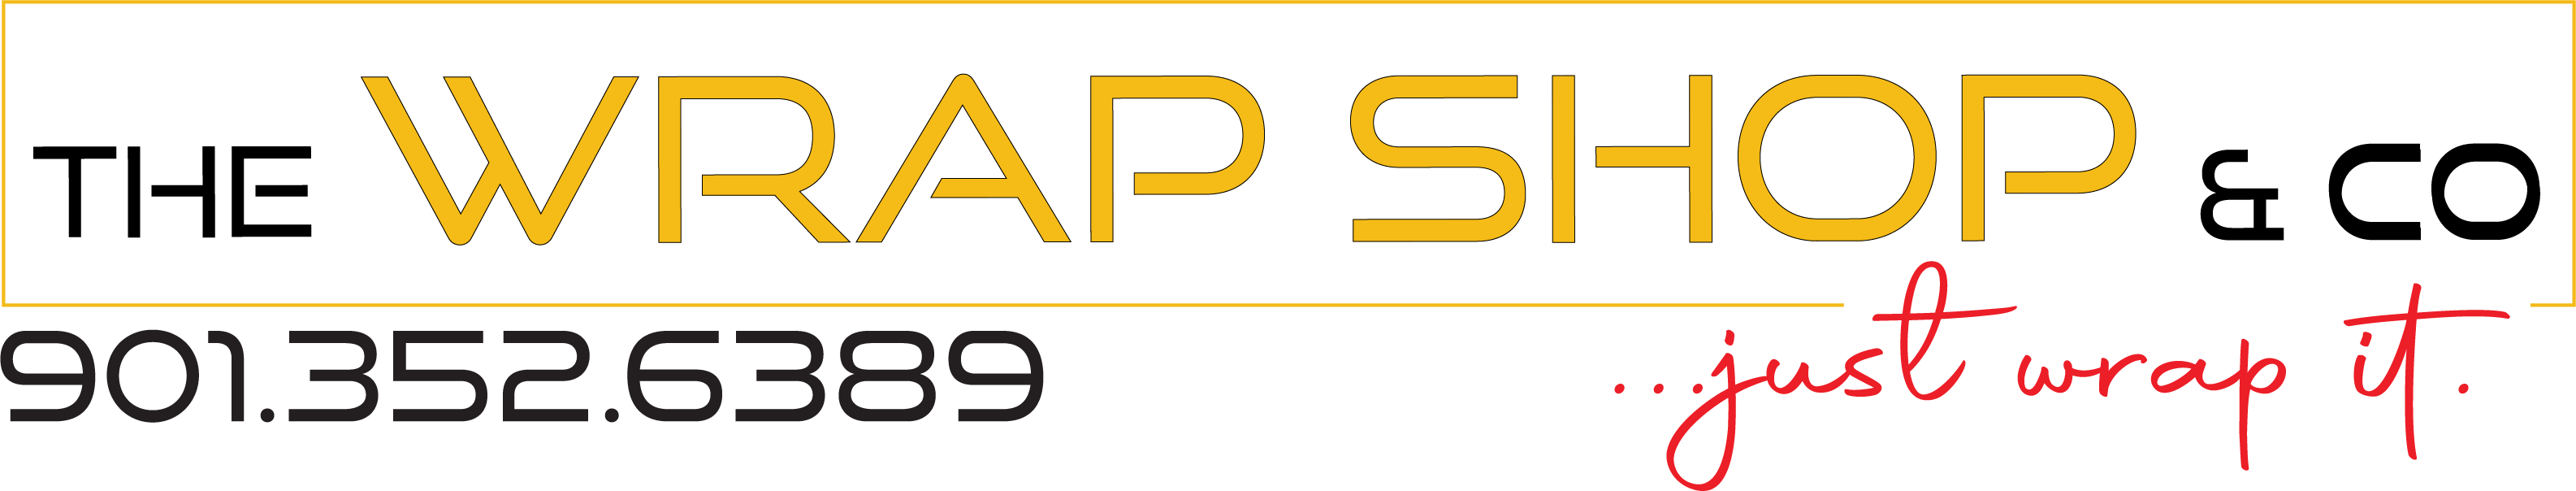 The Wrap Shop & Co